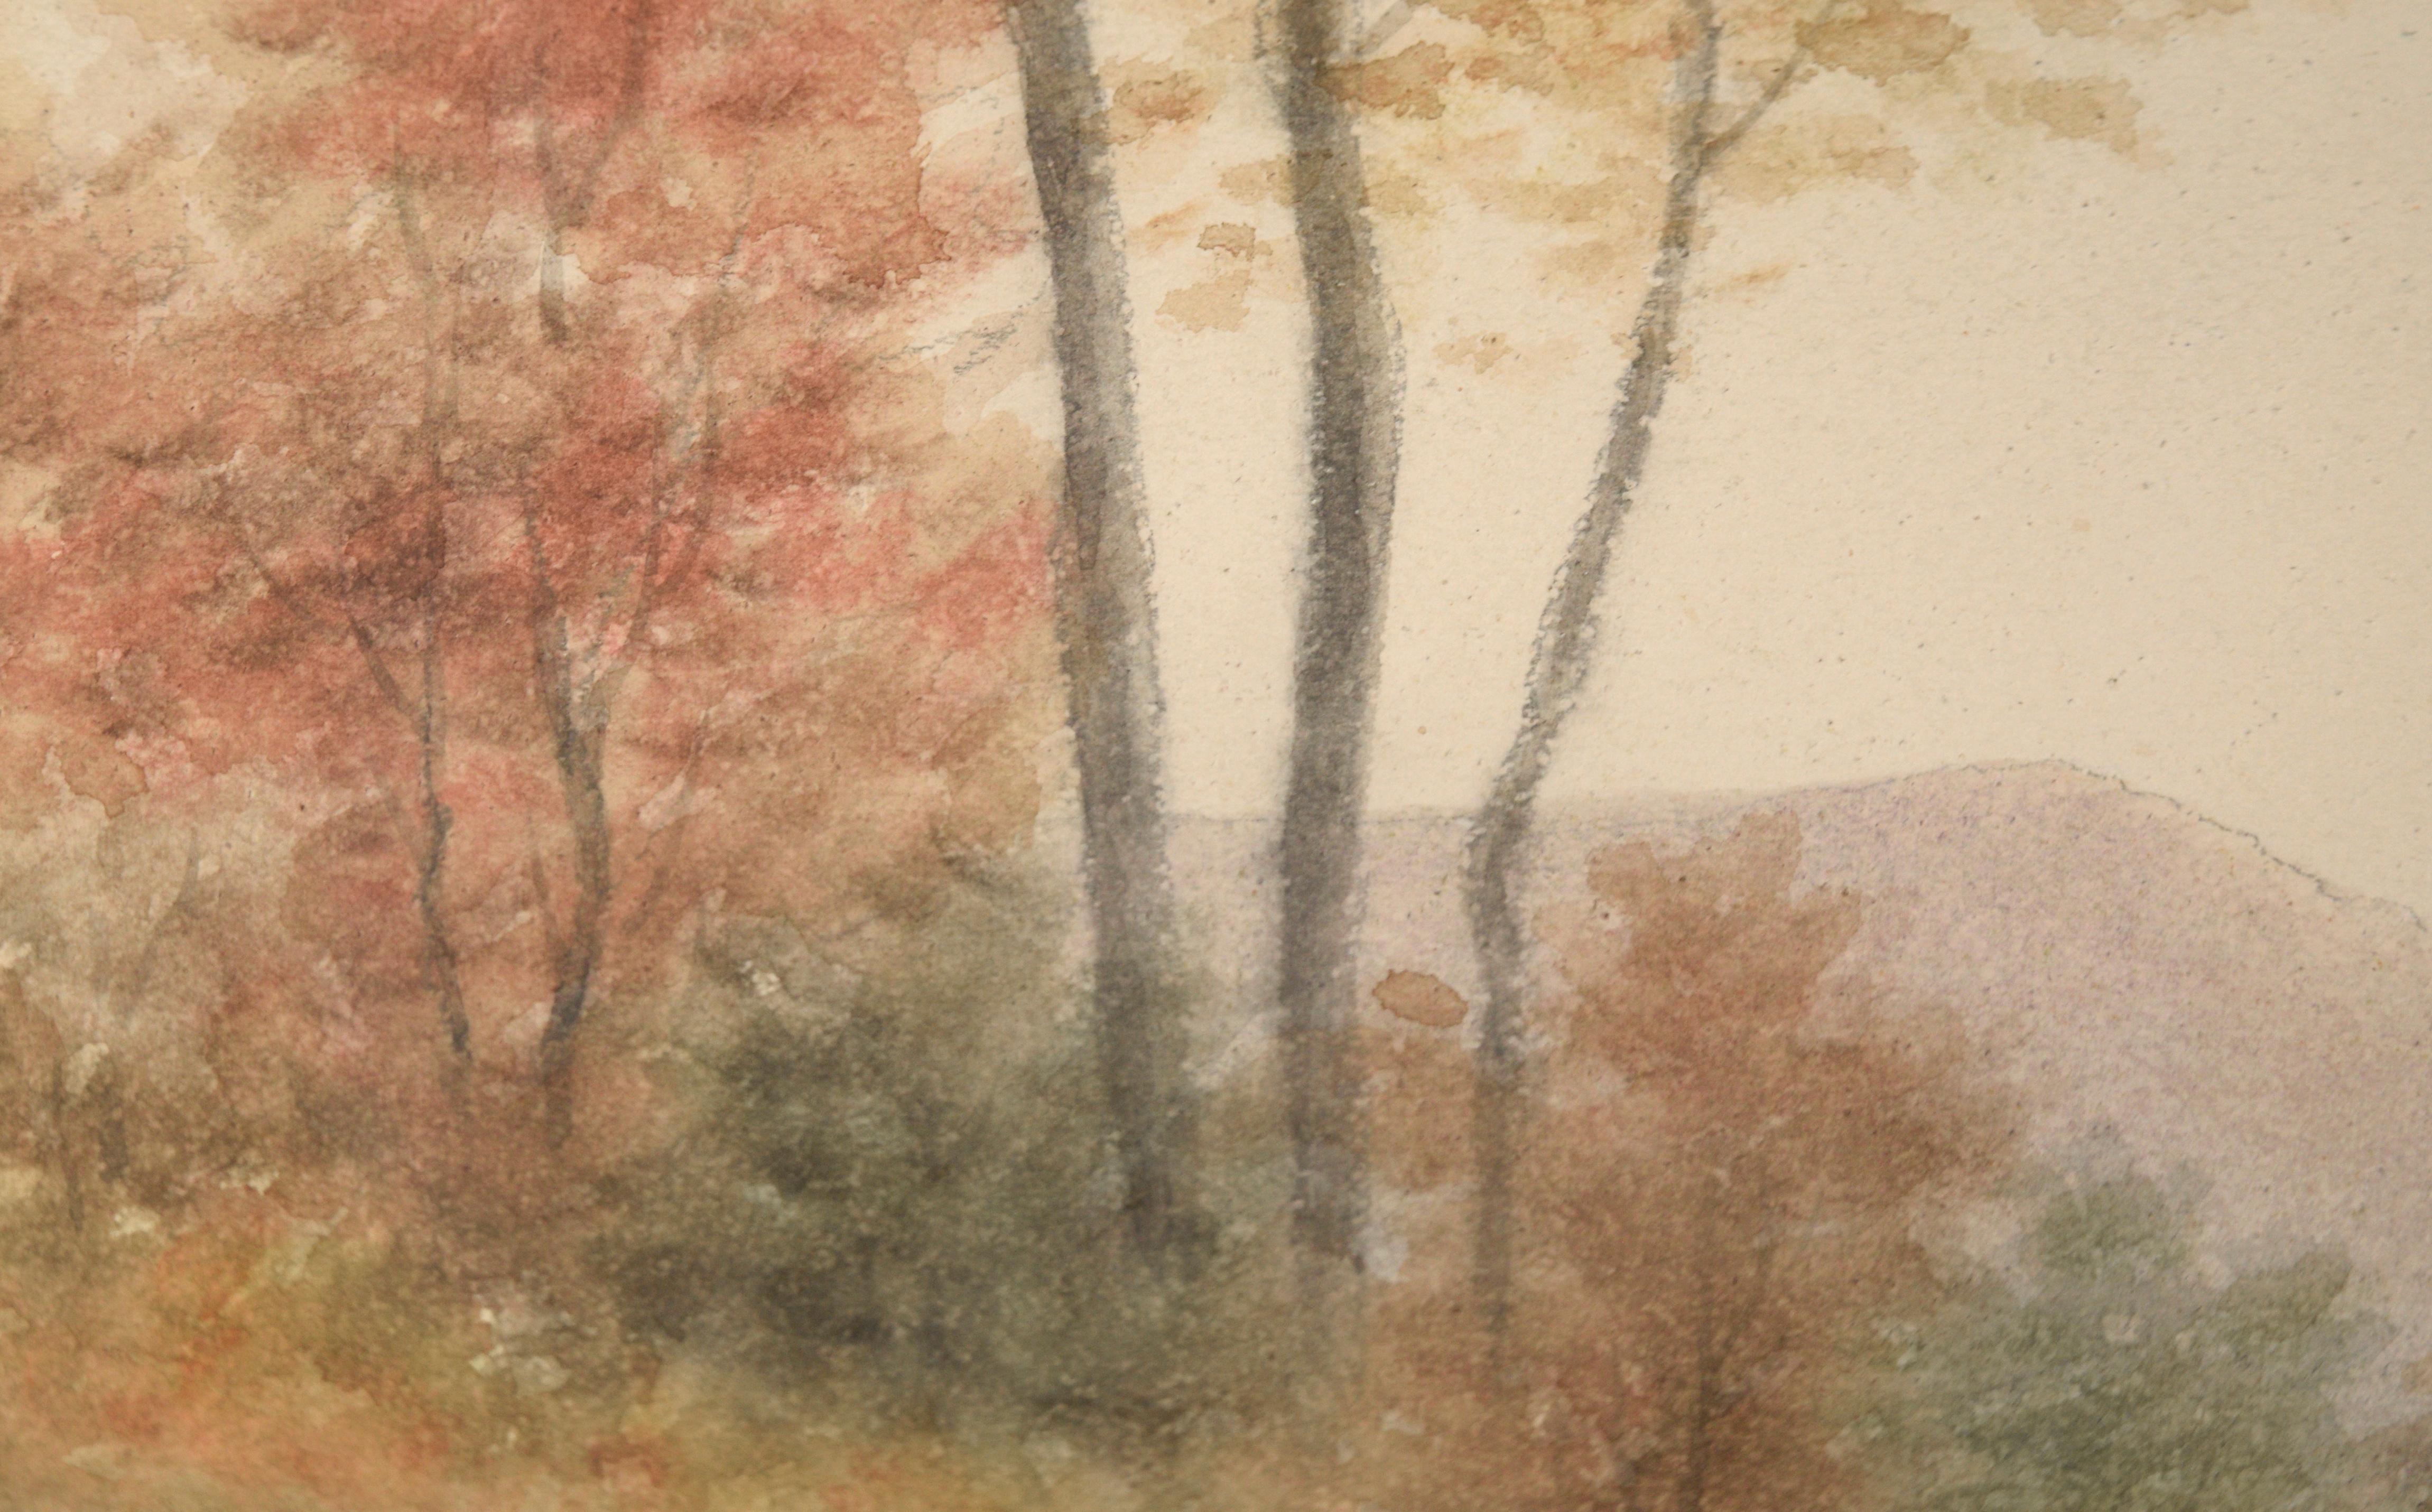 Scène d'automne aux tons subtils par Sydney Cooper (américain, 19e-20e s.). Cette pièce est composée de tons automnaux discrets - bronzés, verts pâles et rouges cuivrés. Un ruisseau bleu traverse le paysage et serpente au loin, divisant la